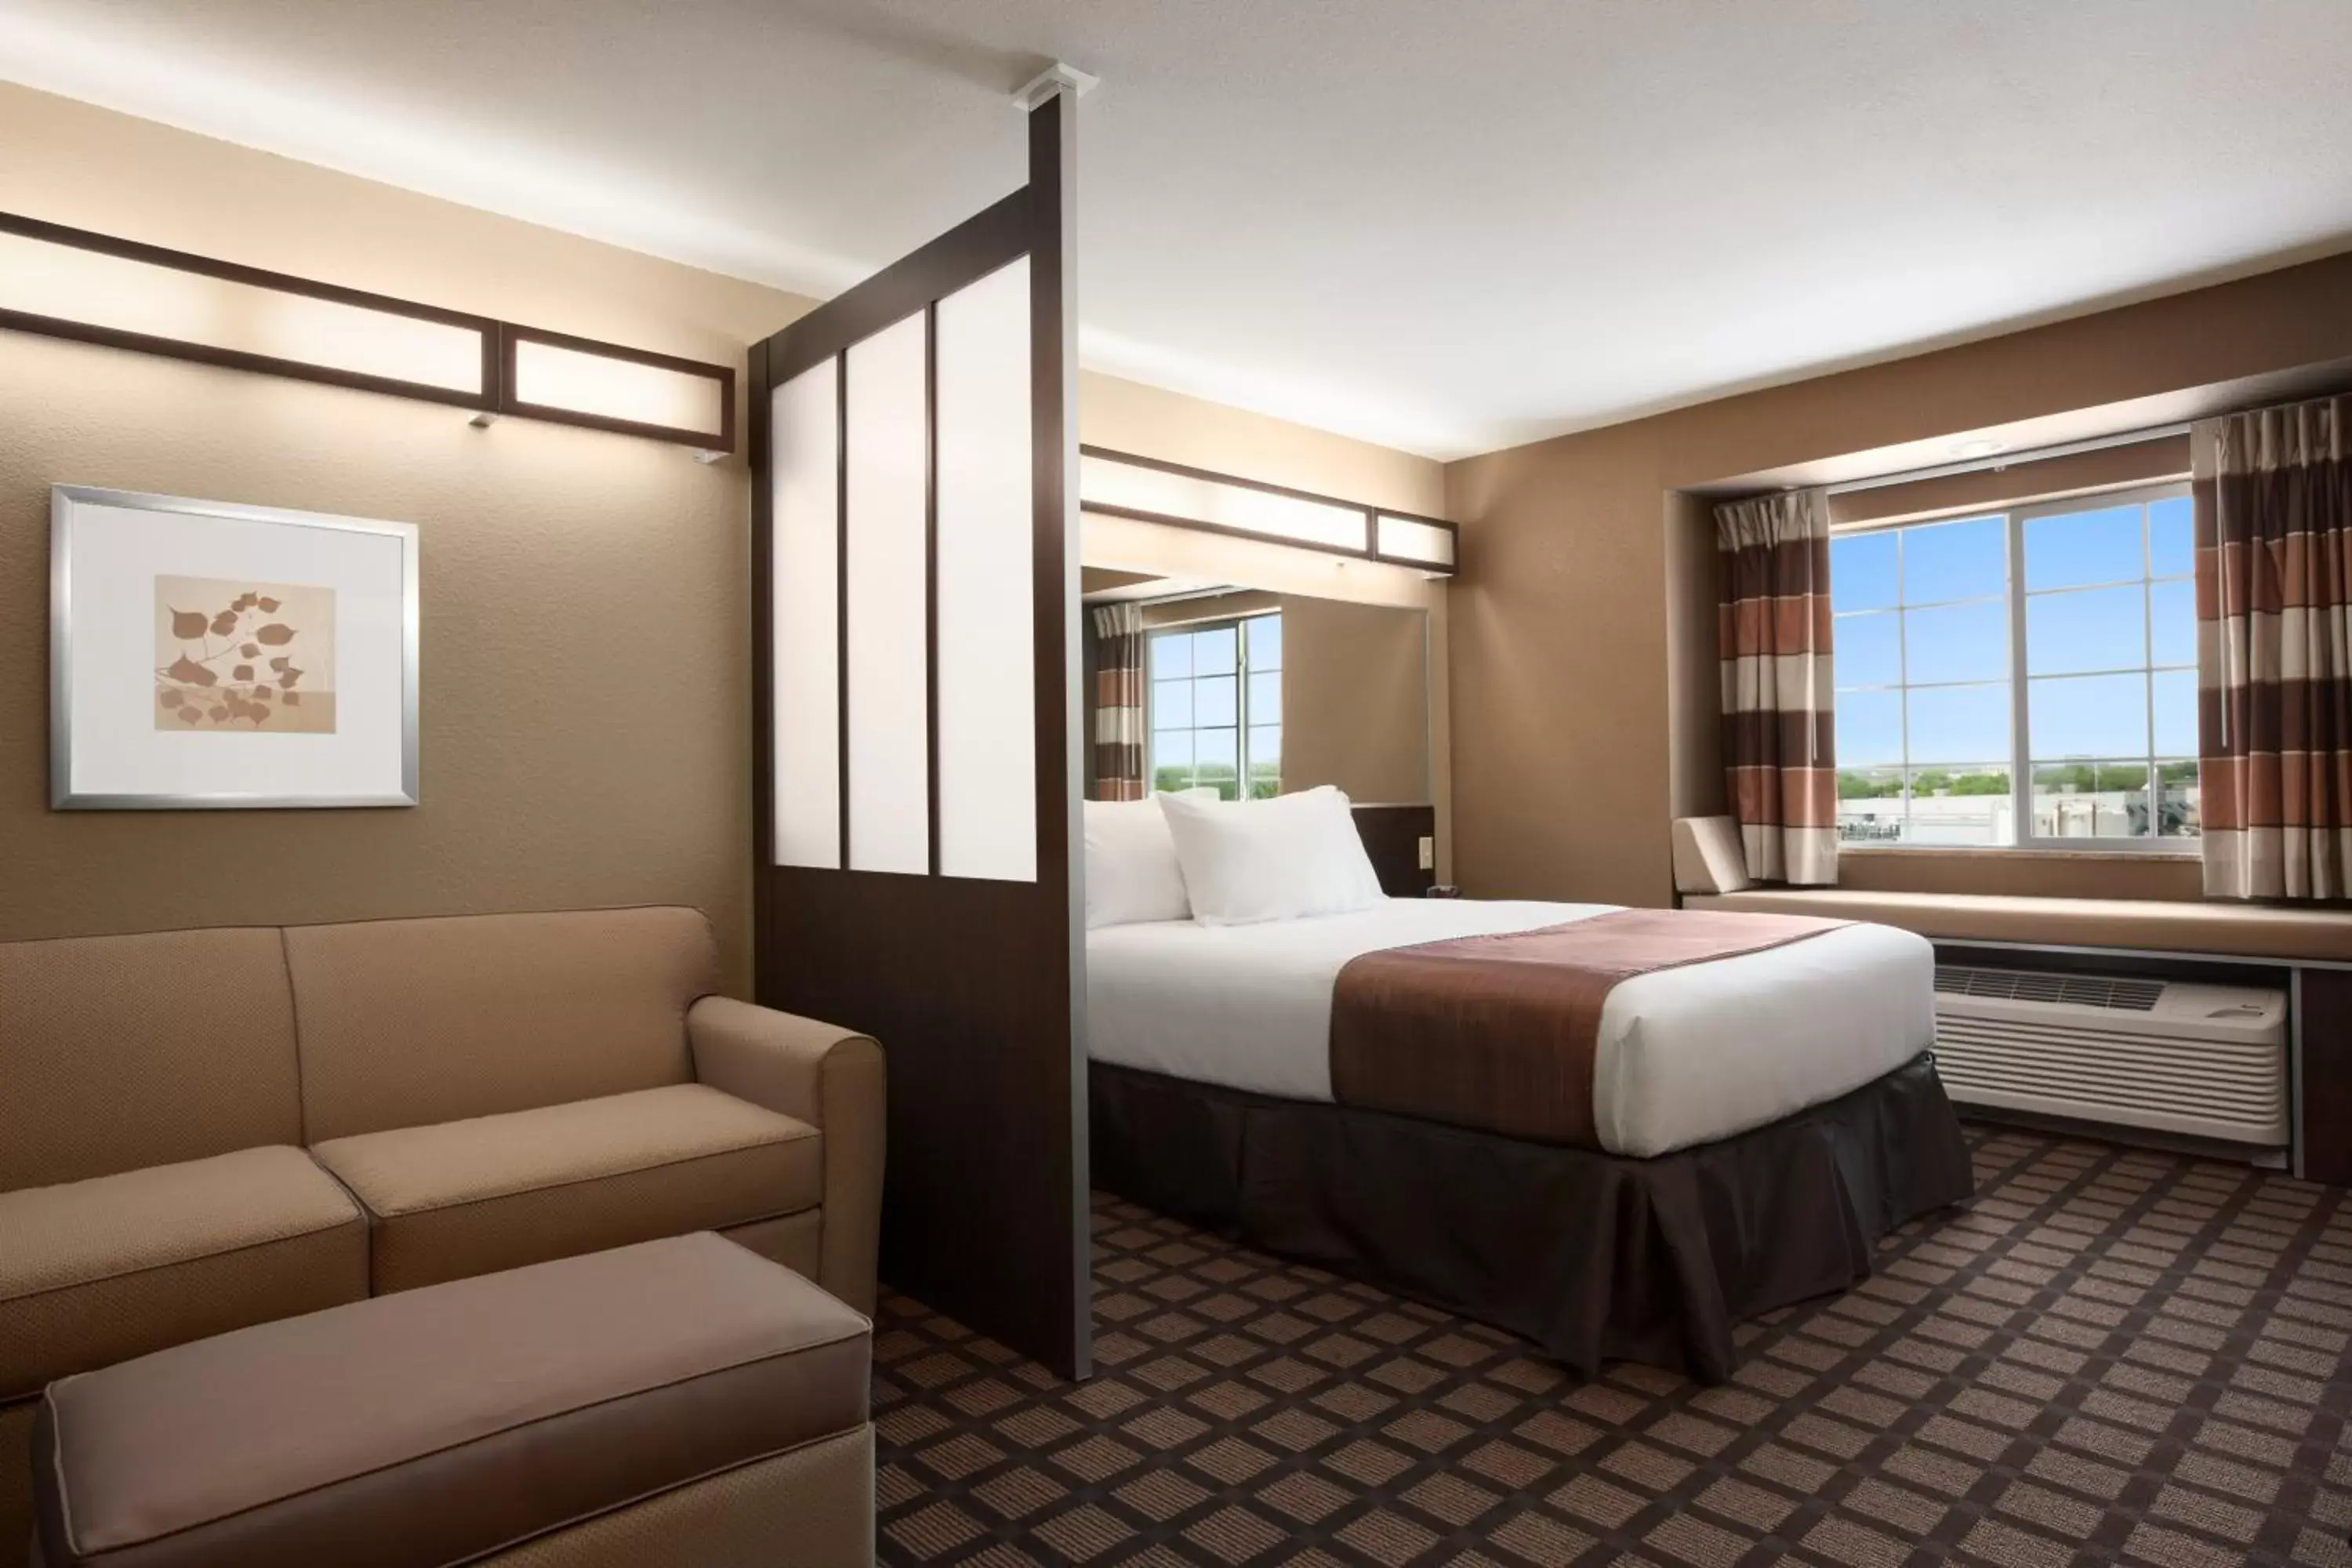 Bedroom in Microtel Inn & Suites Pleasanton